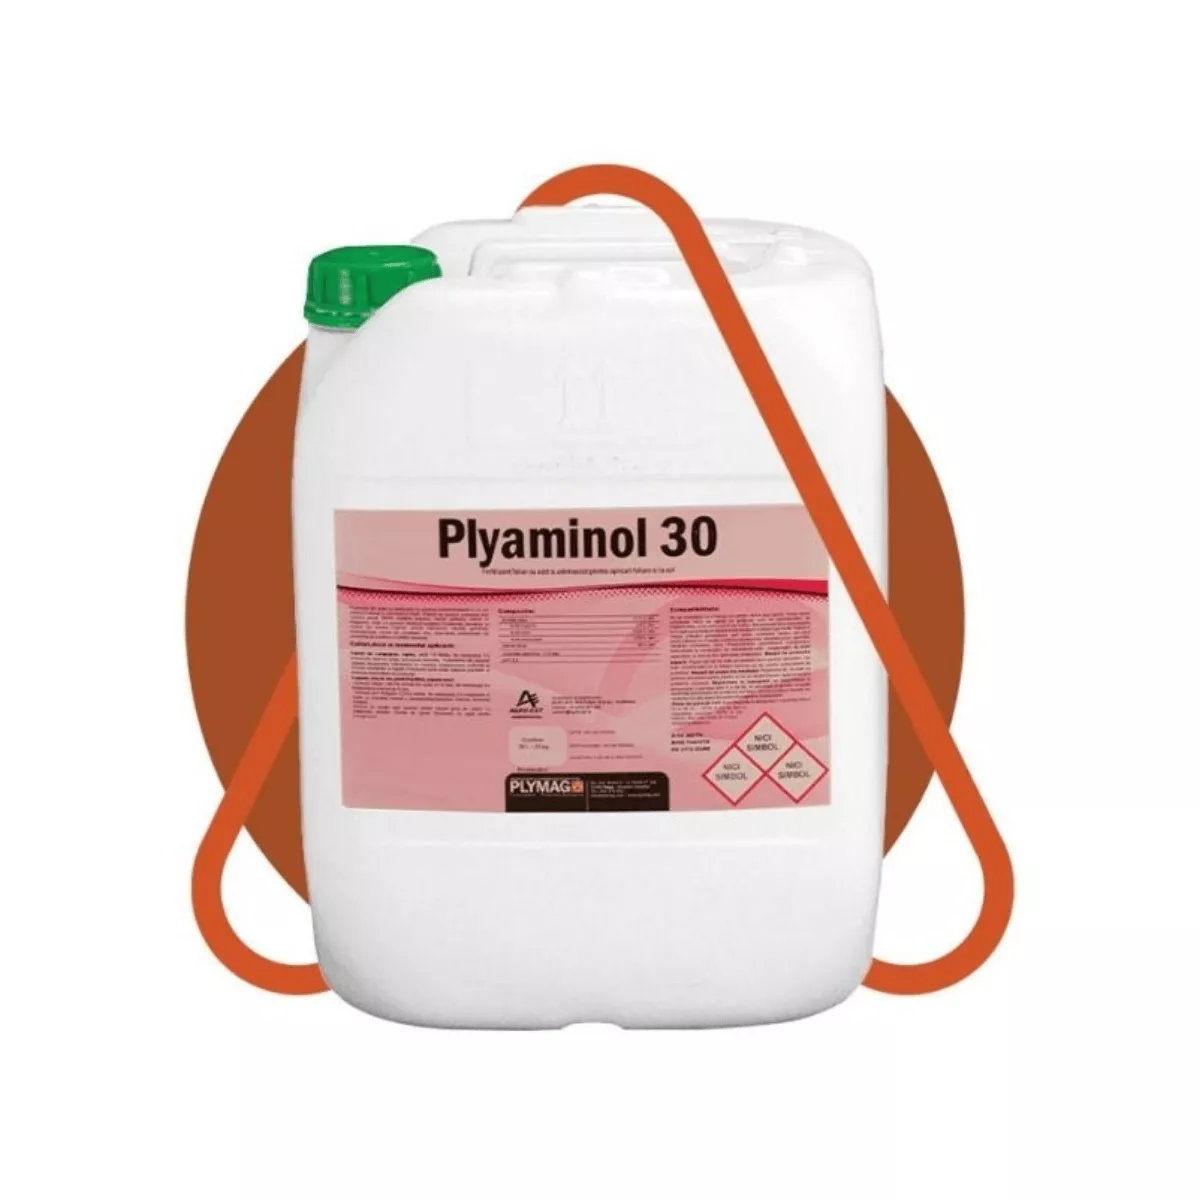 Biostimulator cu aminoacizi liberi 30% Plyaminol 30, 20 L 1